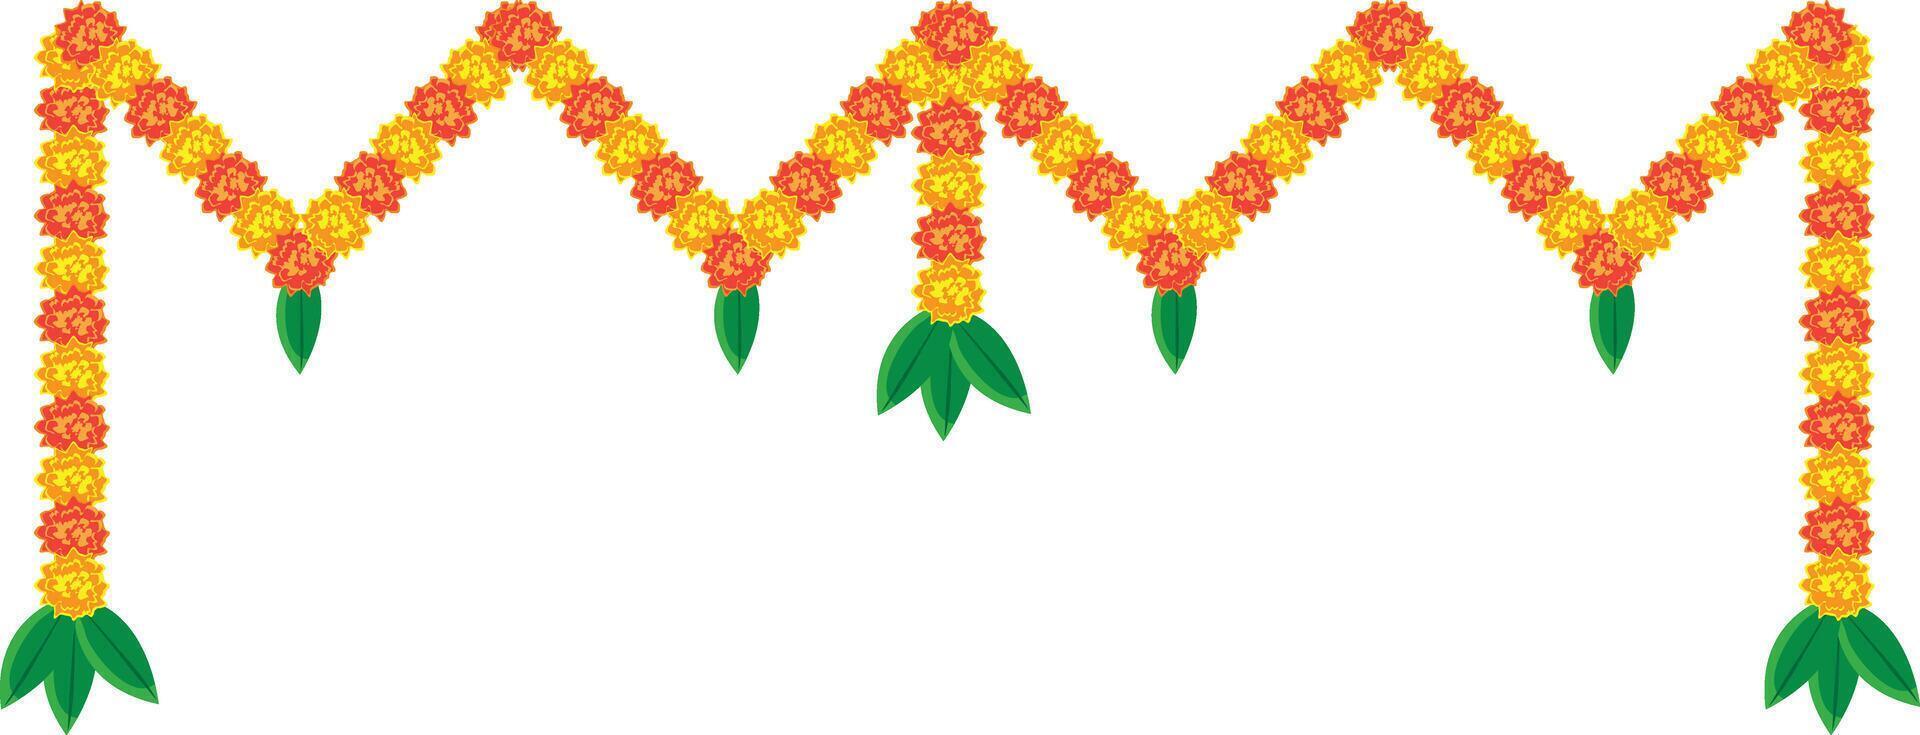 Indisch goudsbloem guirlande, Toran ontwerp, bloem vlaggedoek vector